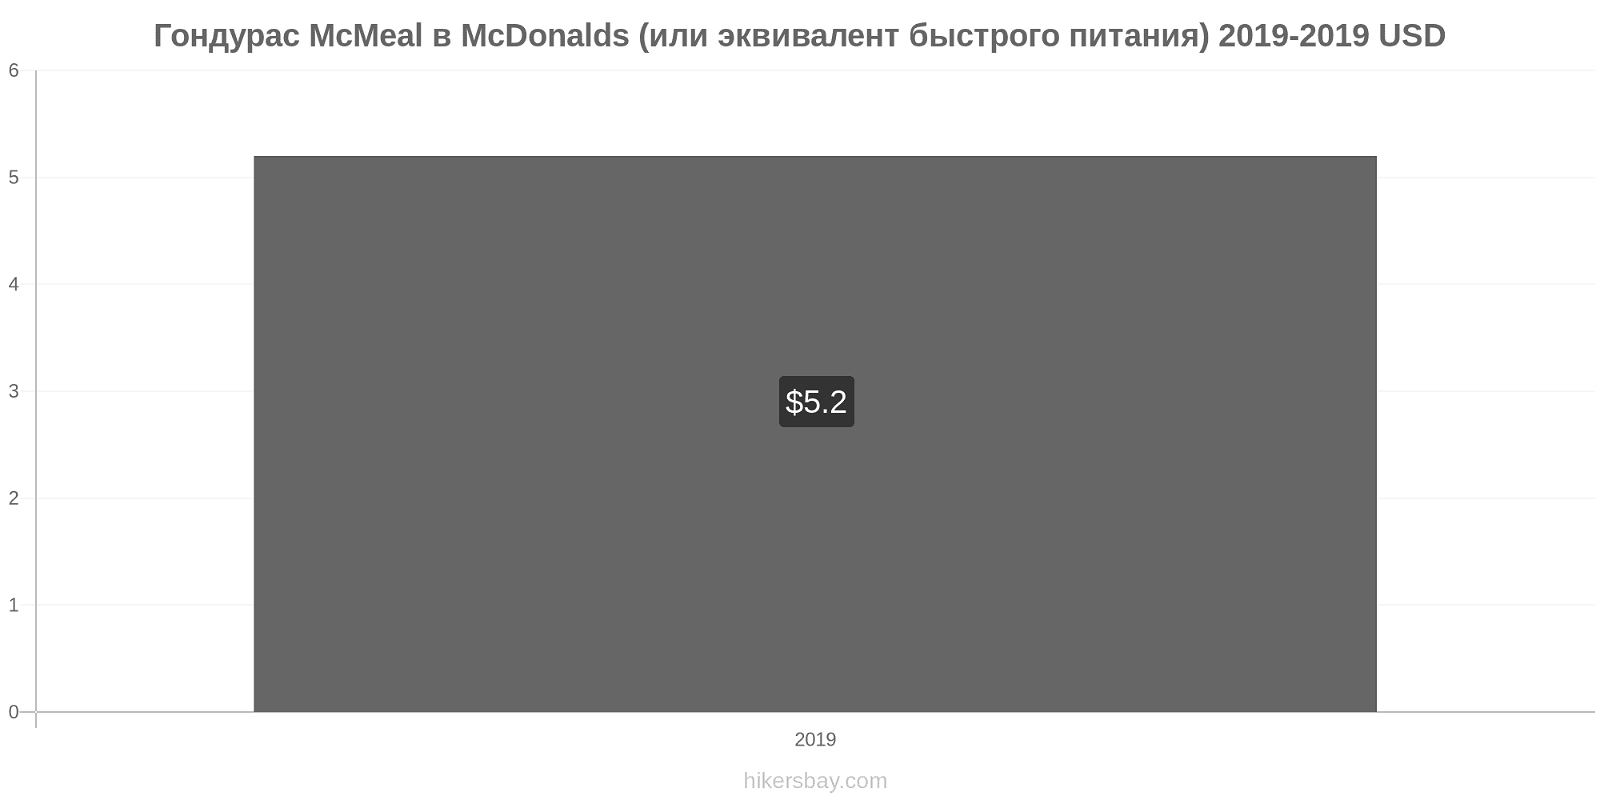 Гондурас изменения цен McMeal в McDonalds (или эквивалент быстрого питания) hikersbay.com